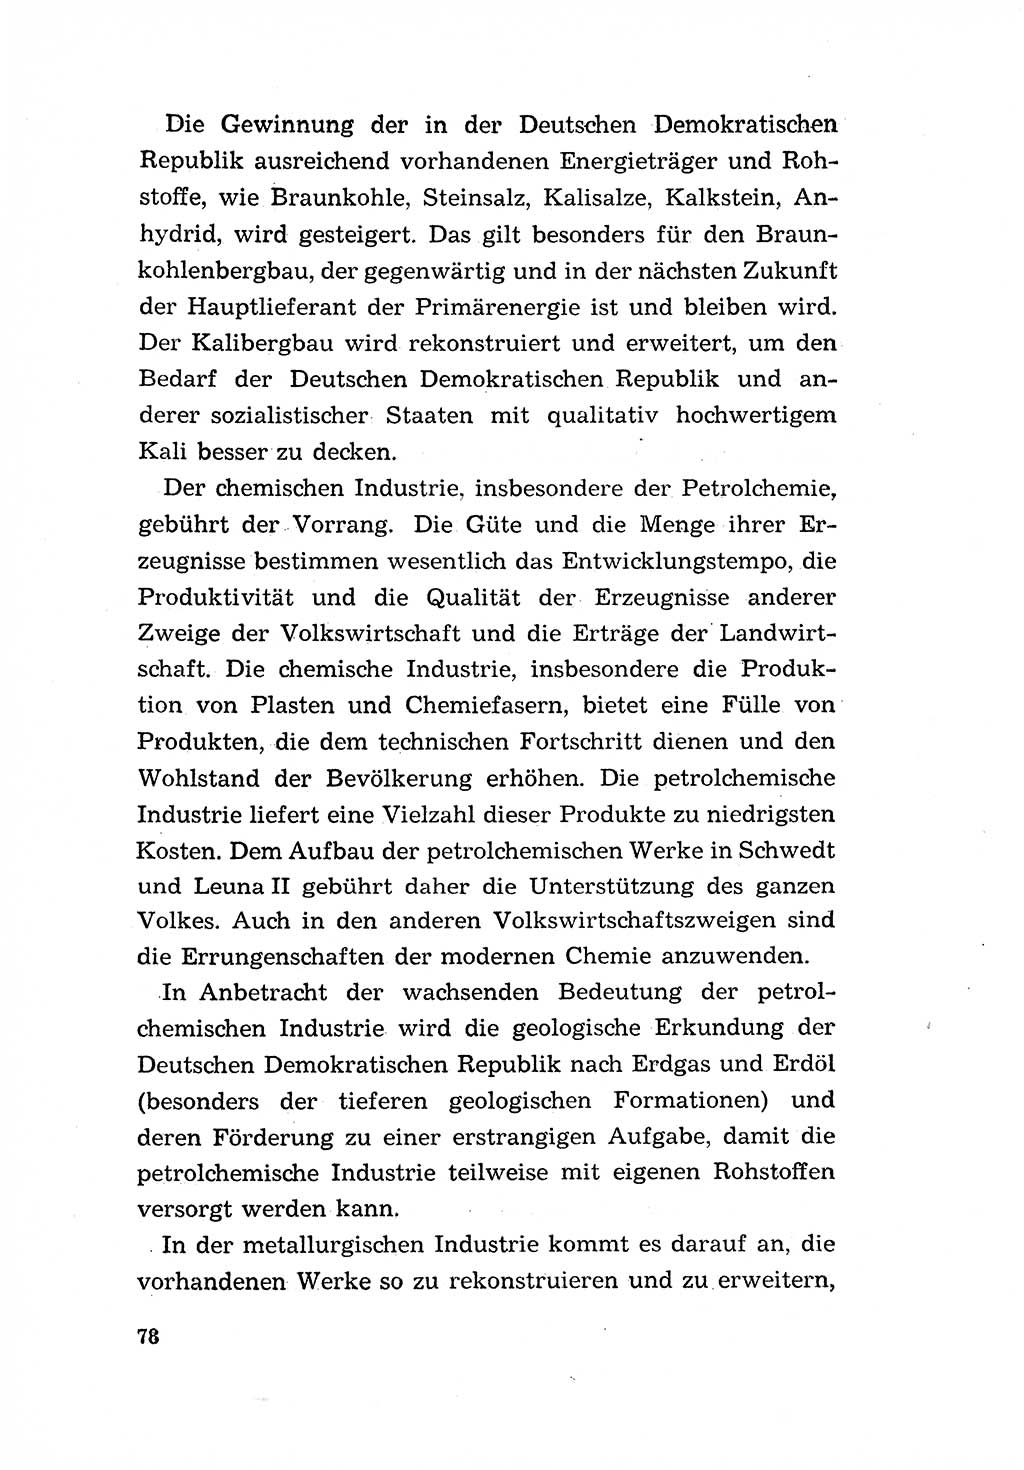 Programm der Sozialistischen Einheitspartei Deutschlands (SED) [Deutsche Demokratische Republik (DDR)] 1963, Seite 78 (Progr. SED DDR 1963, S. 78)